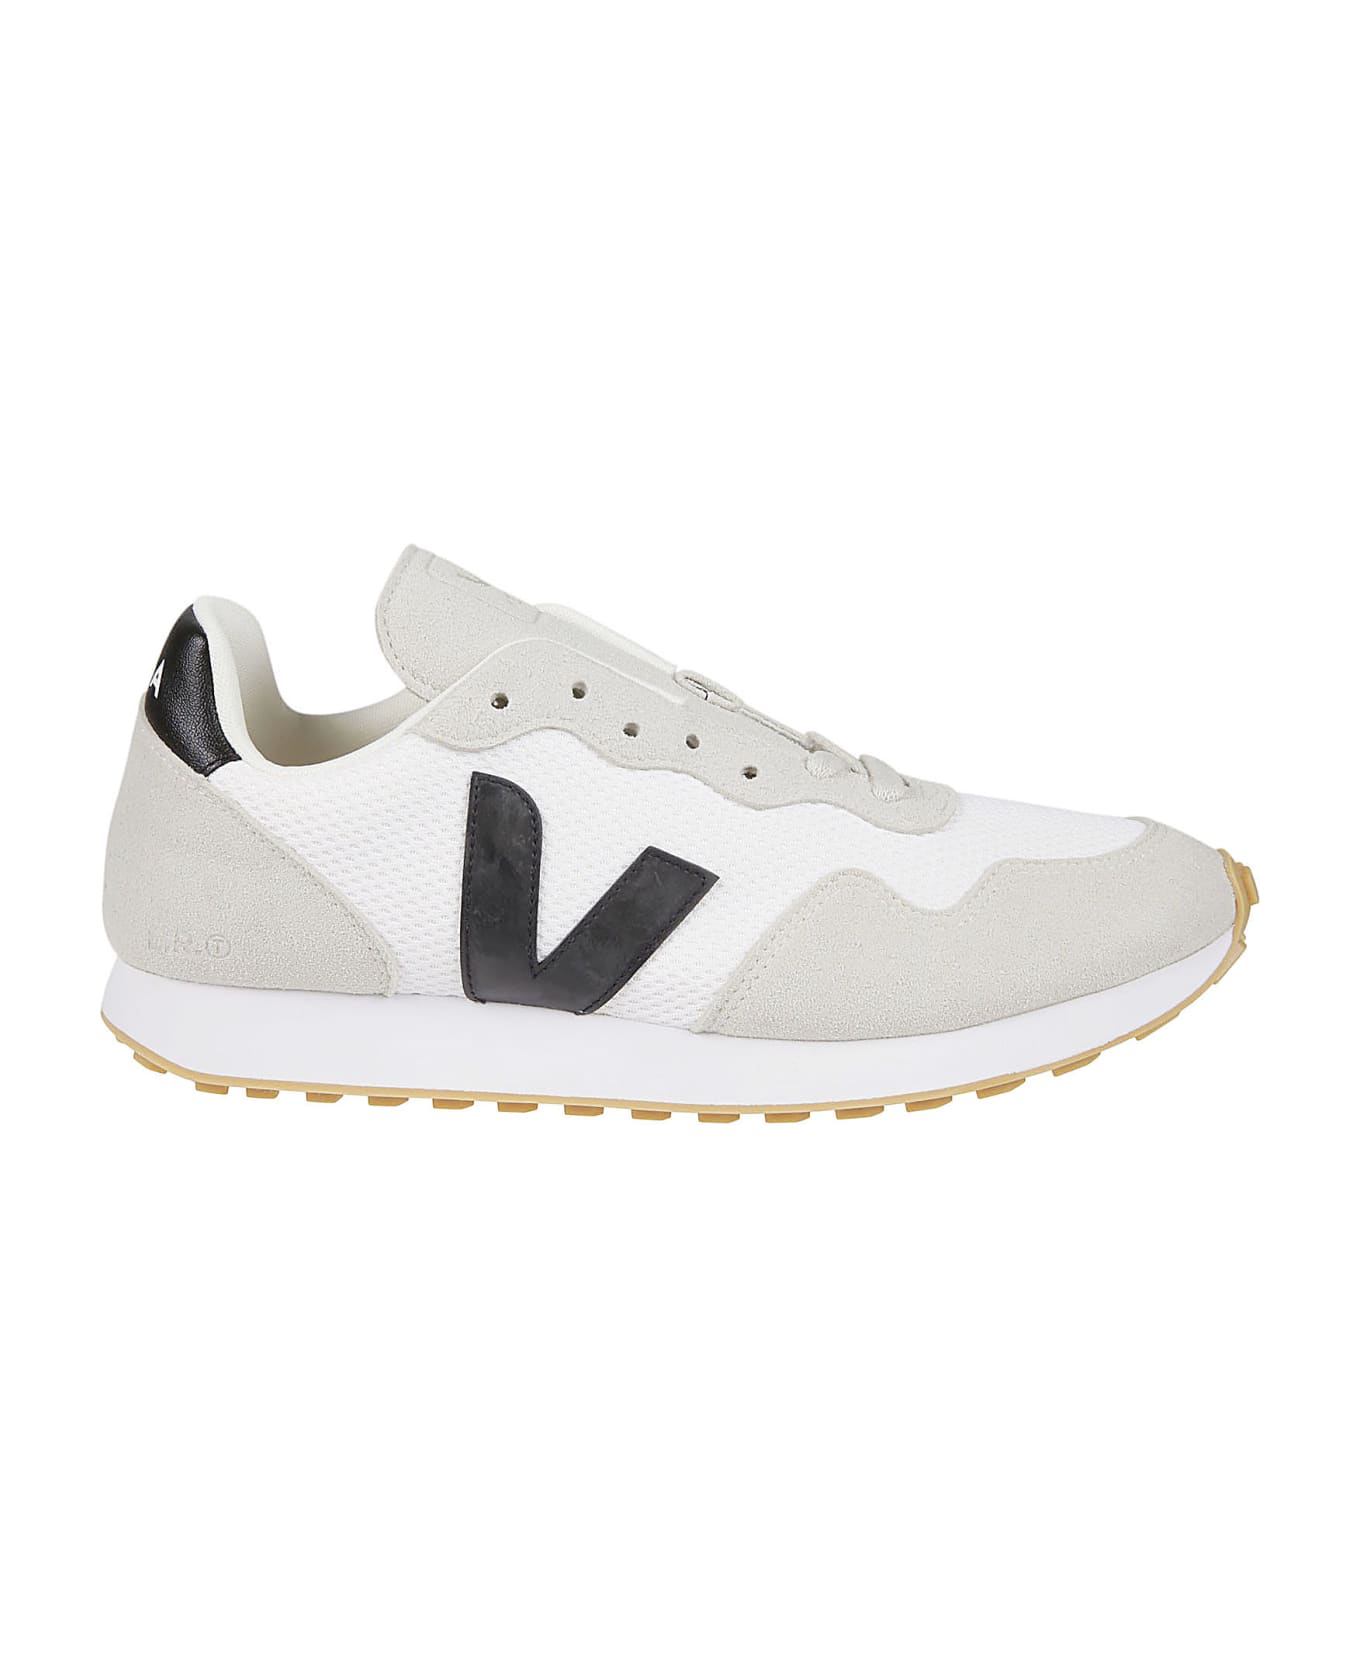 Veja Sdu Sneakers - White/black/natural